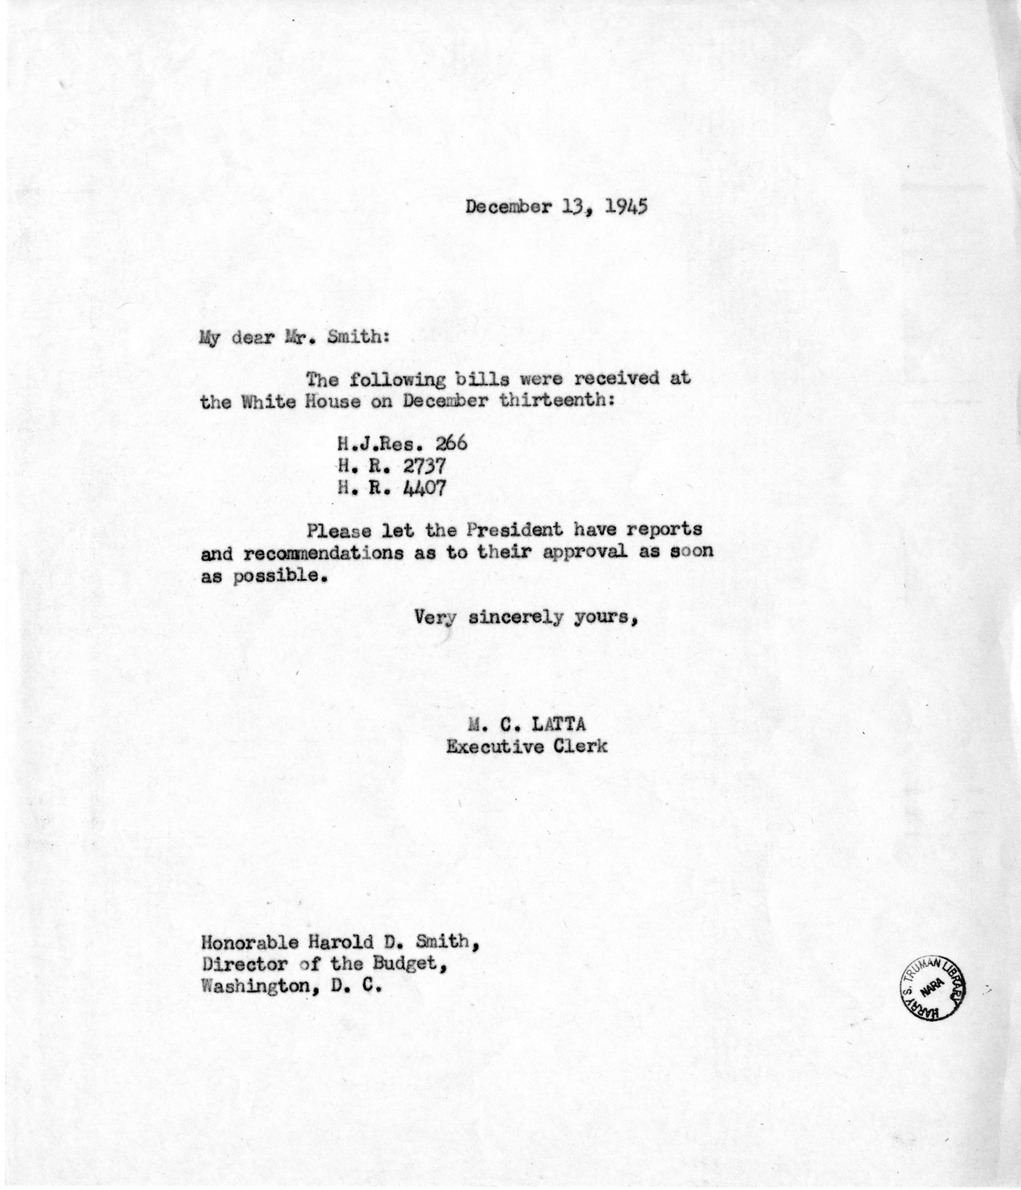 Memorandum From M.C. Latta to Harold D. Smith